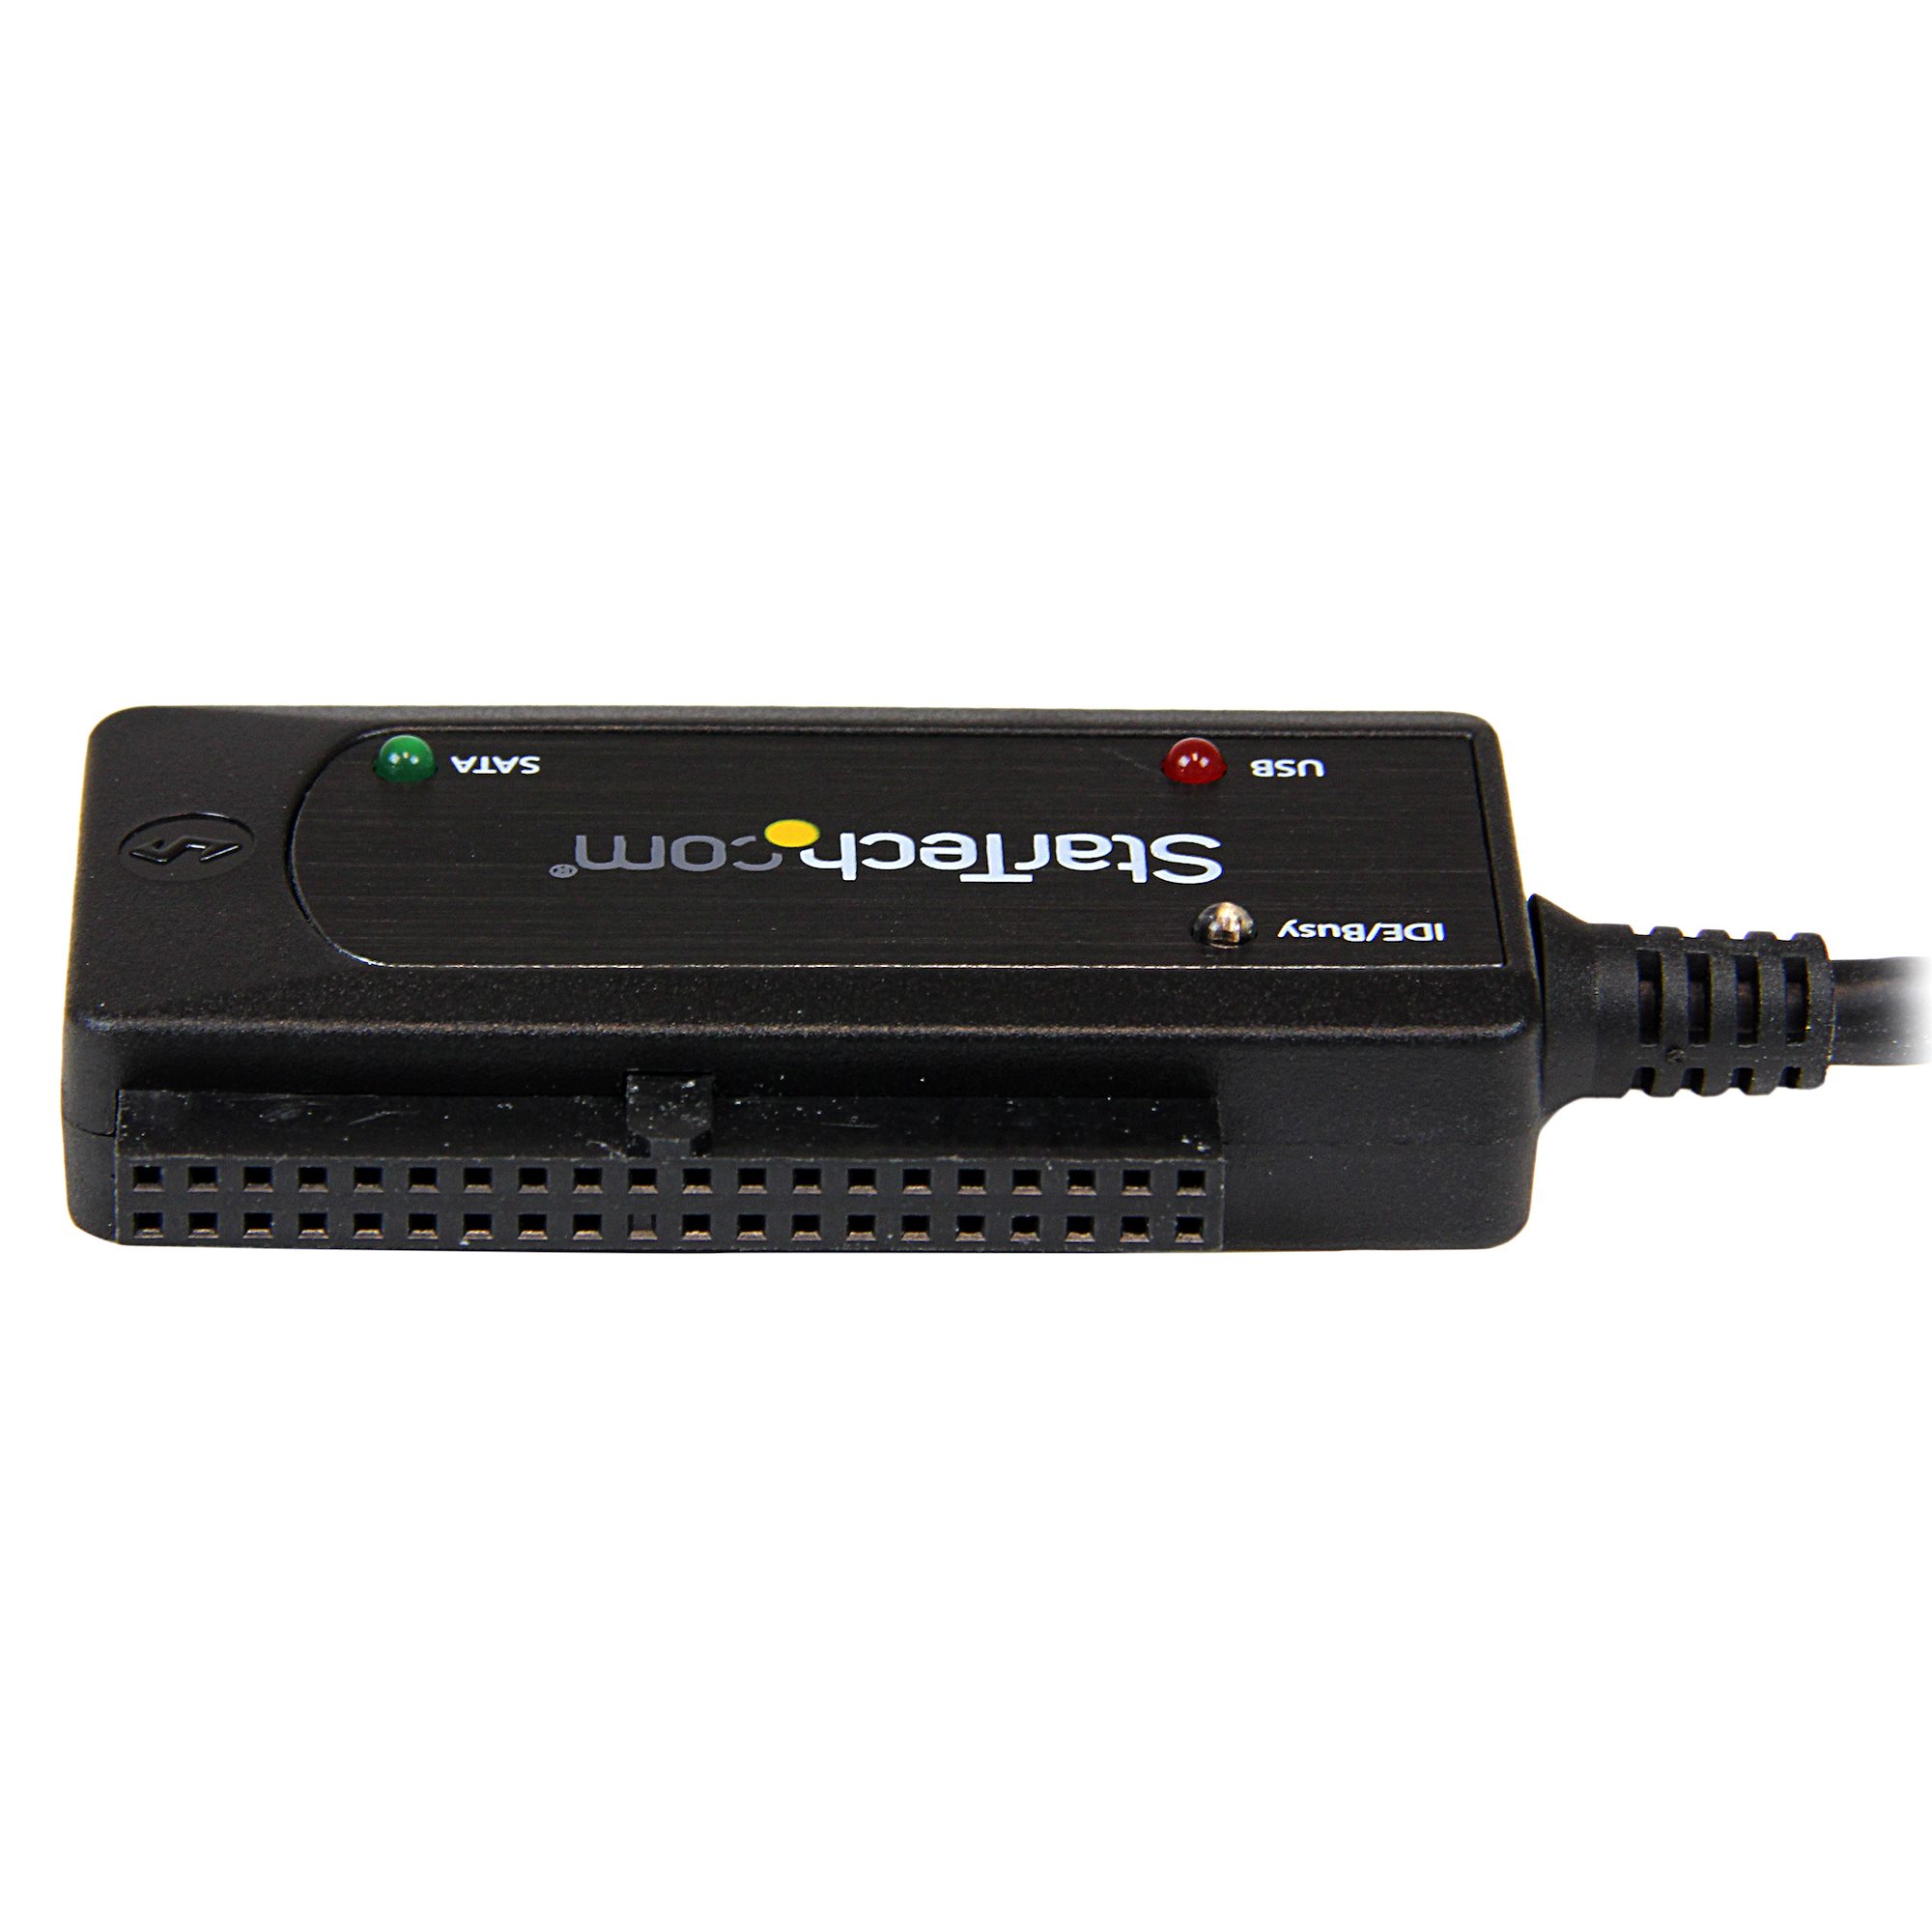 USB 3.0 zu Sata und IDE Konverter Hard Driver Adapter mit 3,5 und 2,5 der IDE und Sata Hard Drivers und USB 3.0 Kabel Übertragungsgeschwindigkeit Bis zu 5Gbps 